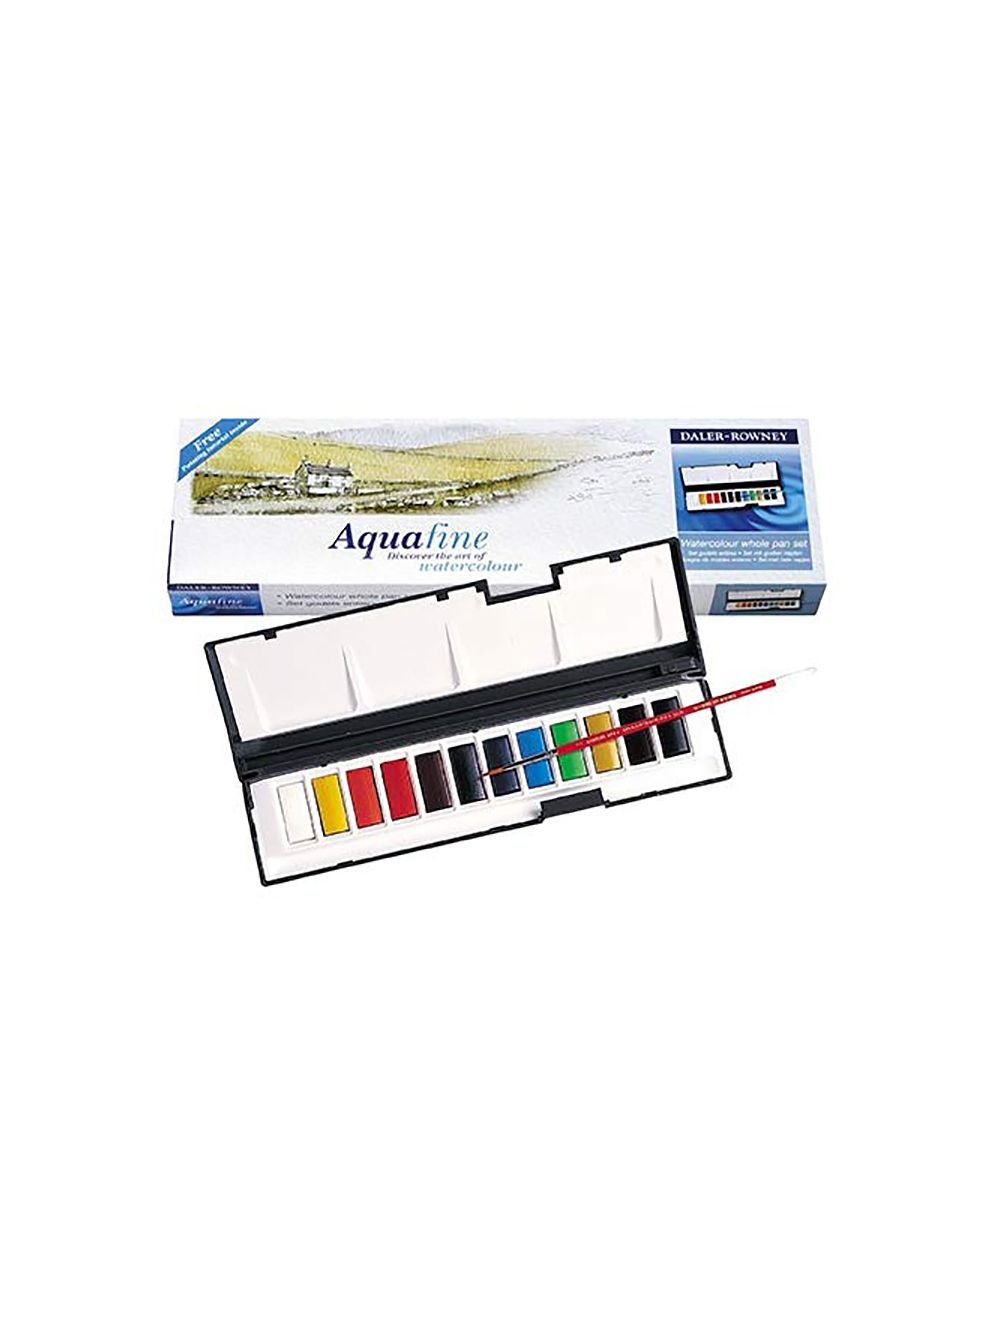 Aquafine Watercolour Mediums, Art Supplies